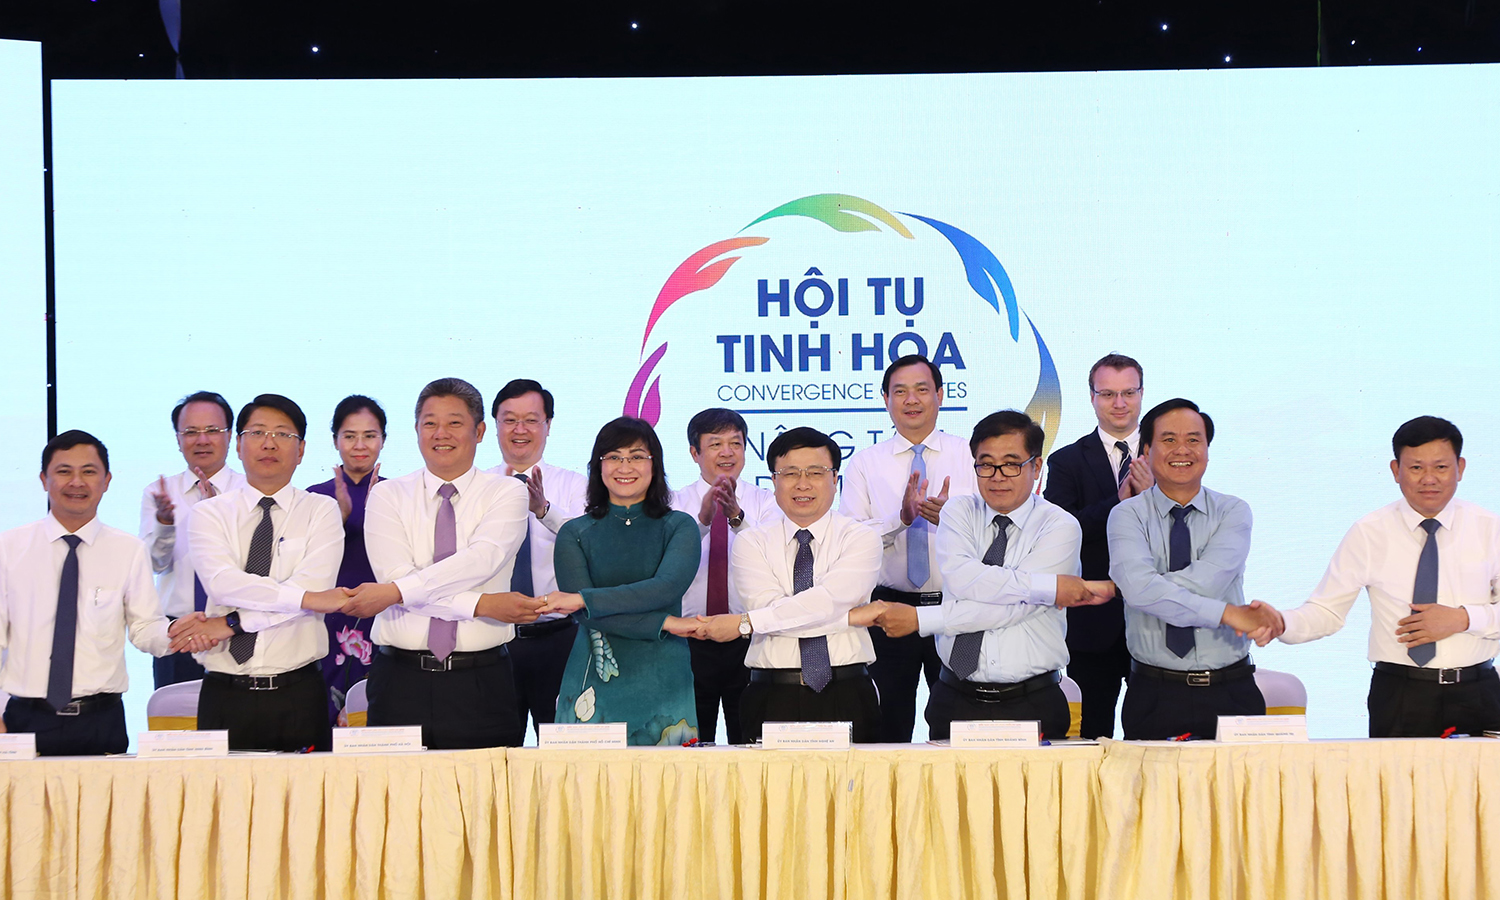 Lãnh đạo UBND các tỉnh, thành ký kết thoả thuận hợp tác liên kết phát triển du lịch giữa các địa phương giai đoạn 2022-2025